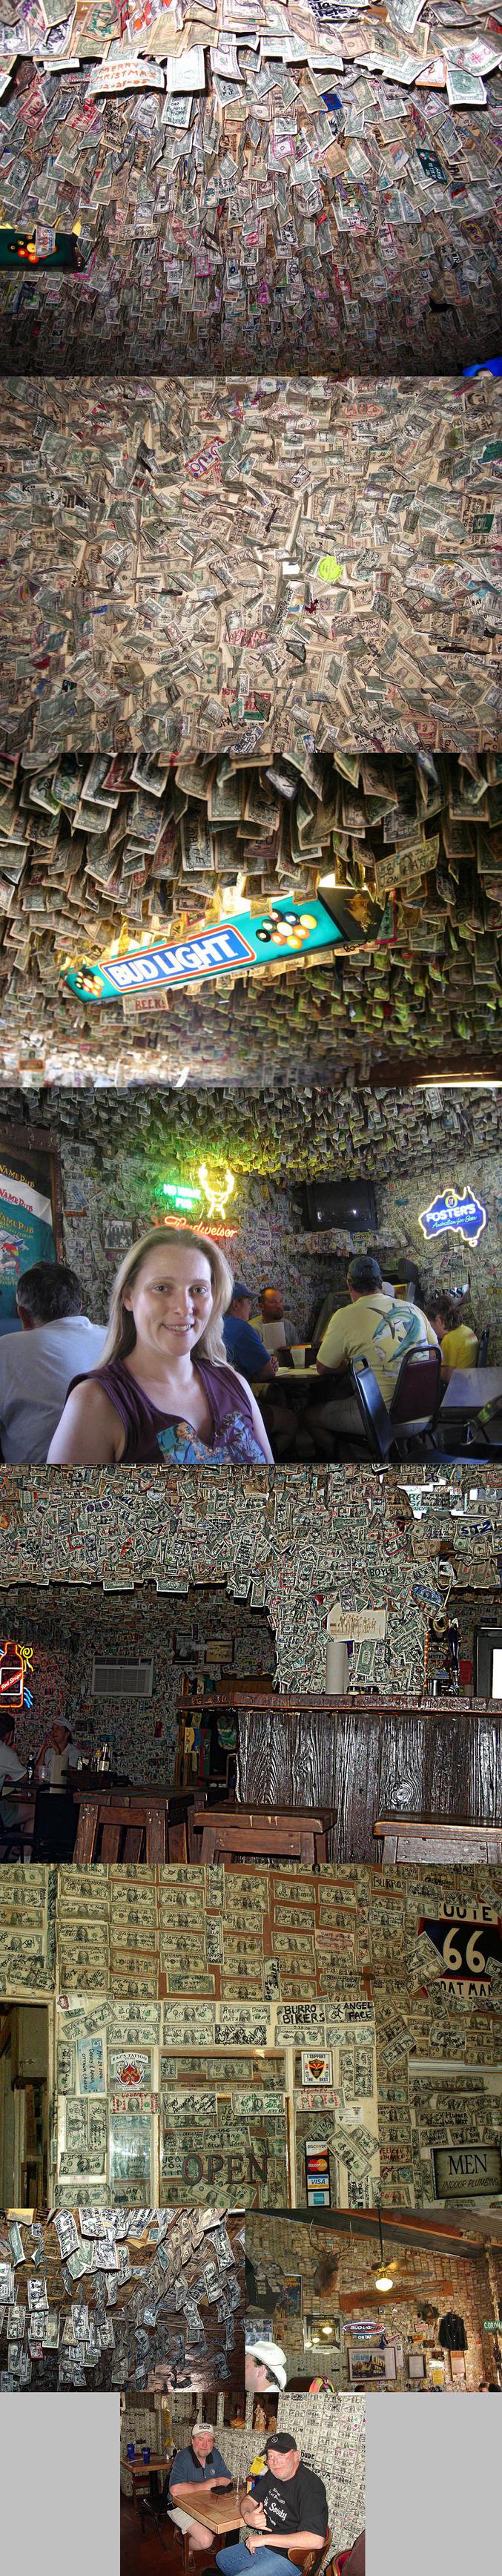 Un bar qui a les murs et le plafond recouverts de billets.